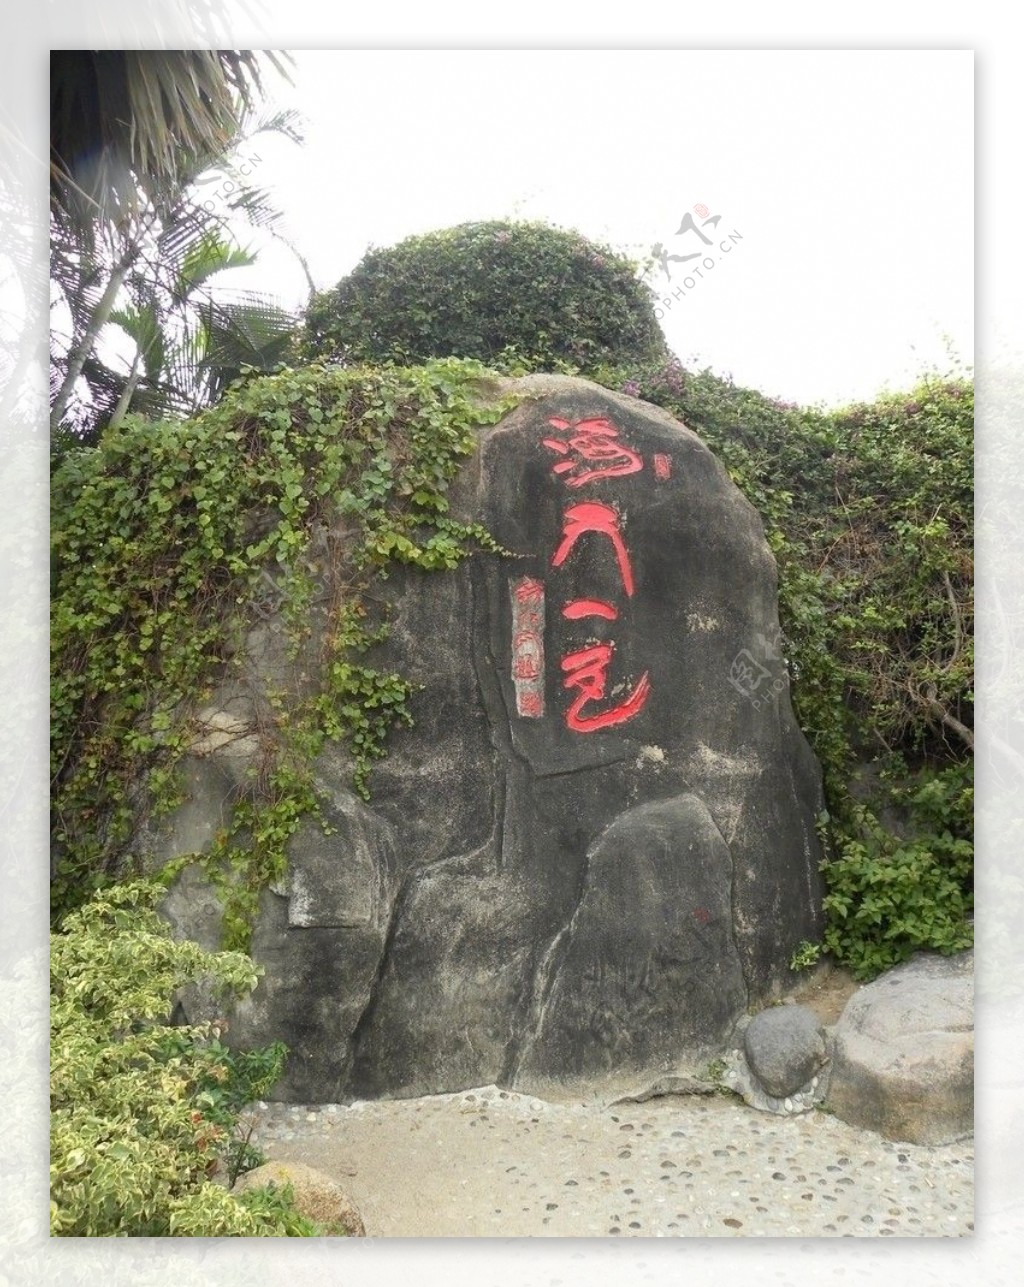 ゆんフリー写真素材集 : No. 10102 蓬莱閣 石碑 [中国 / 煙台]